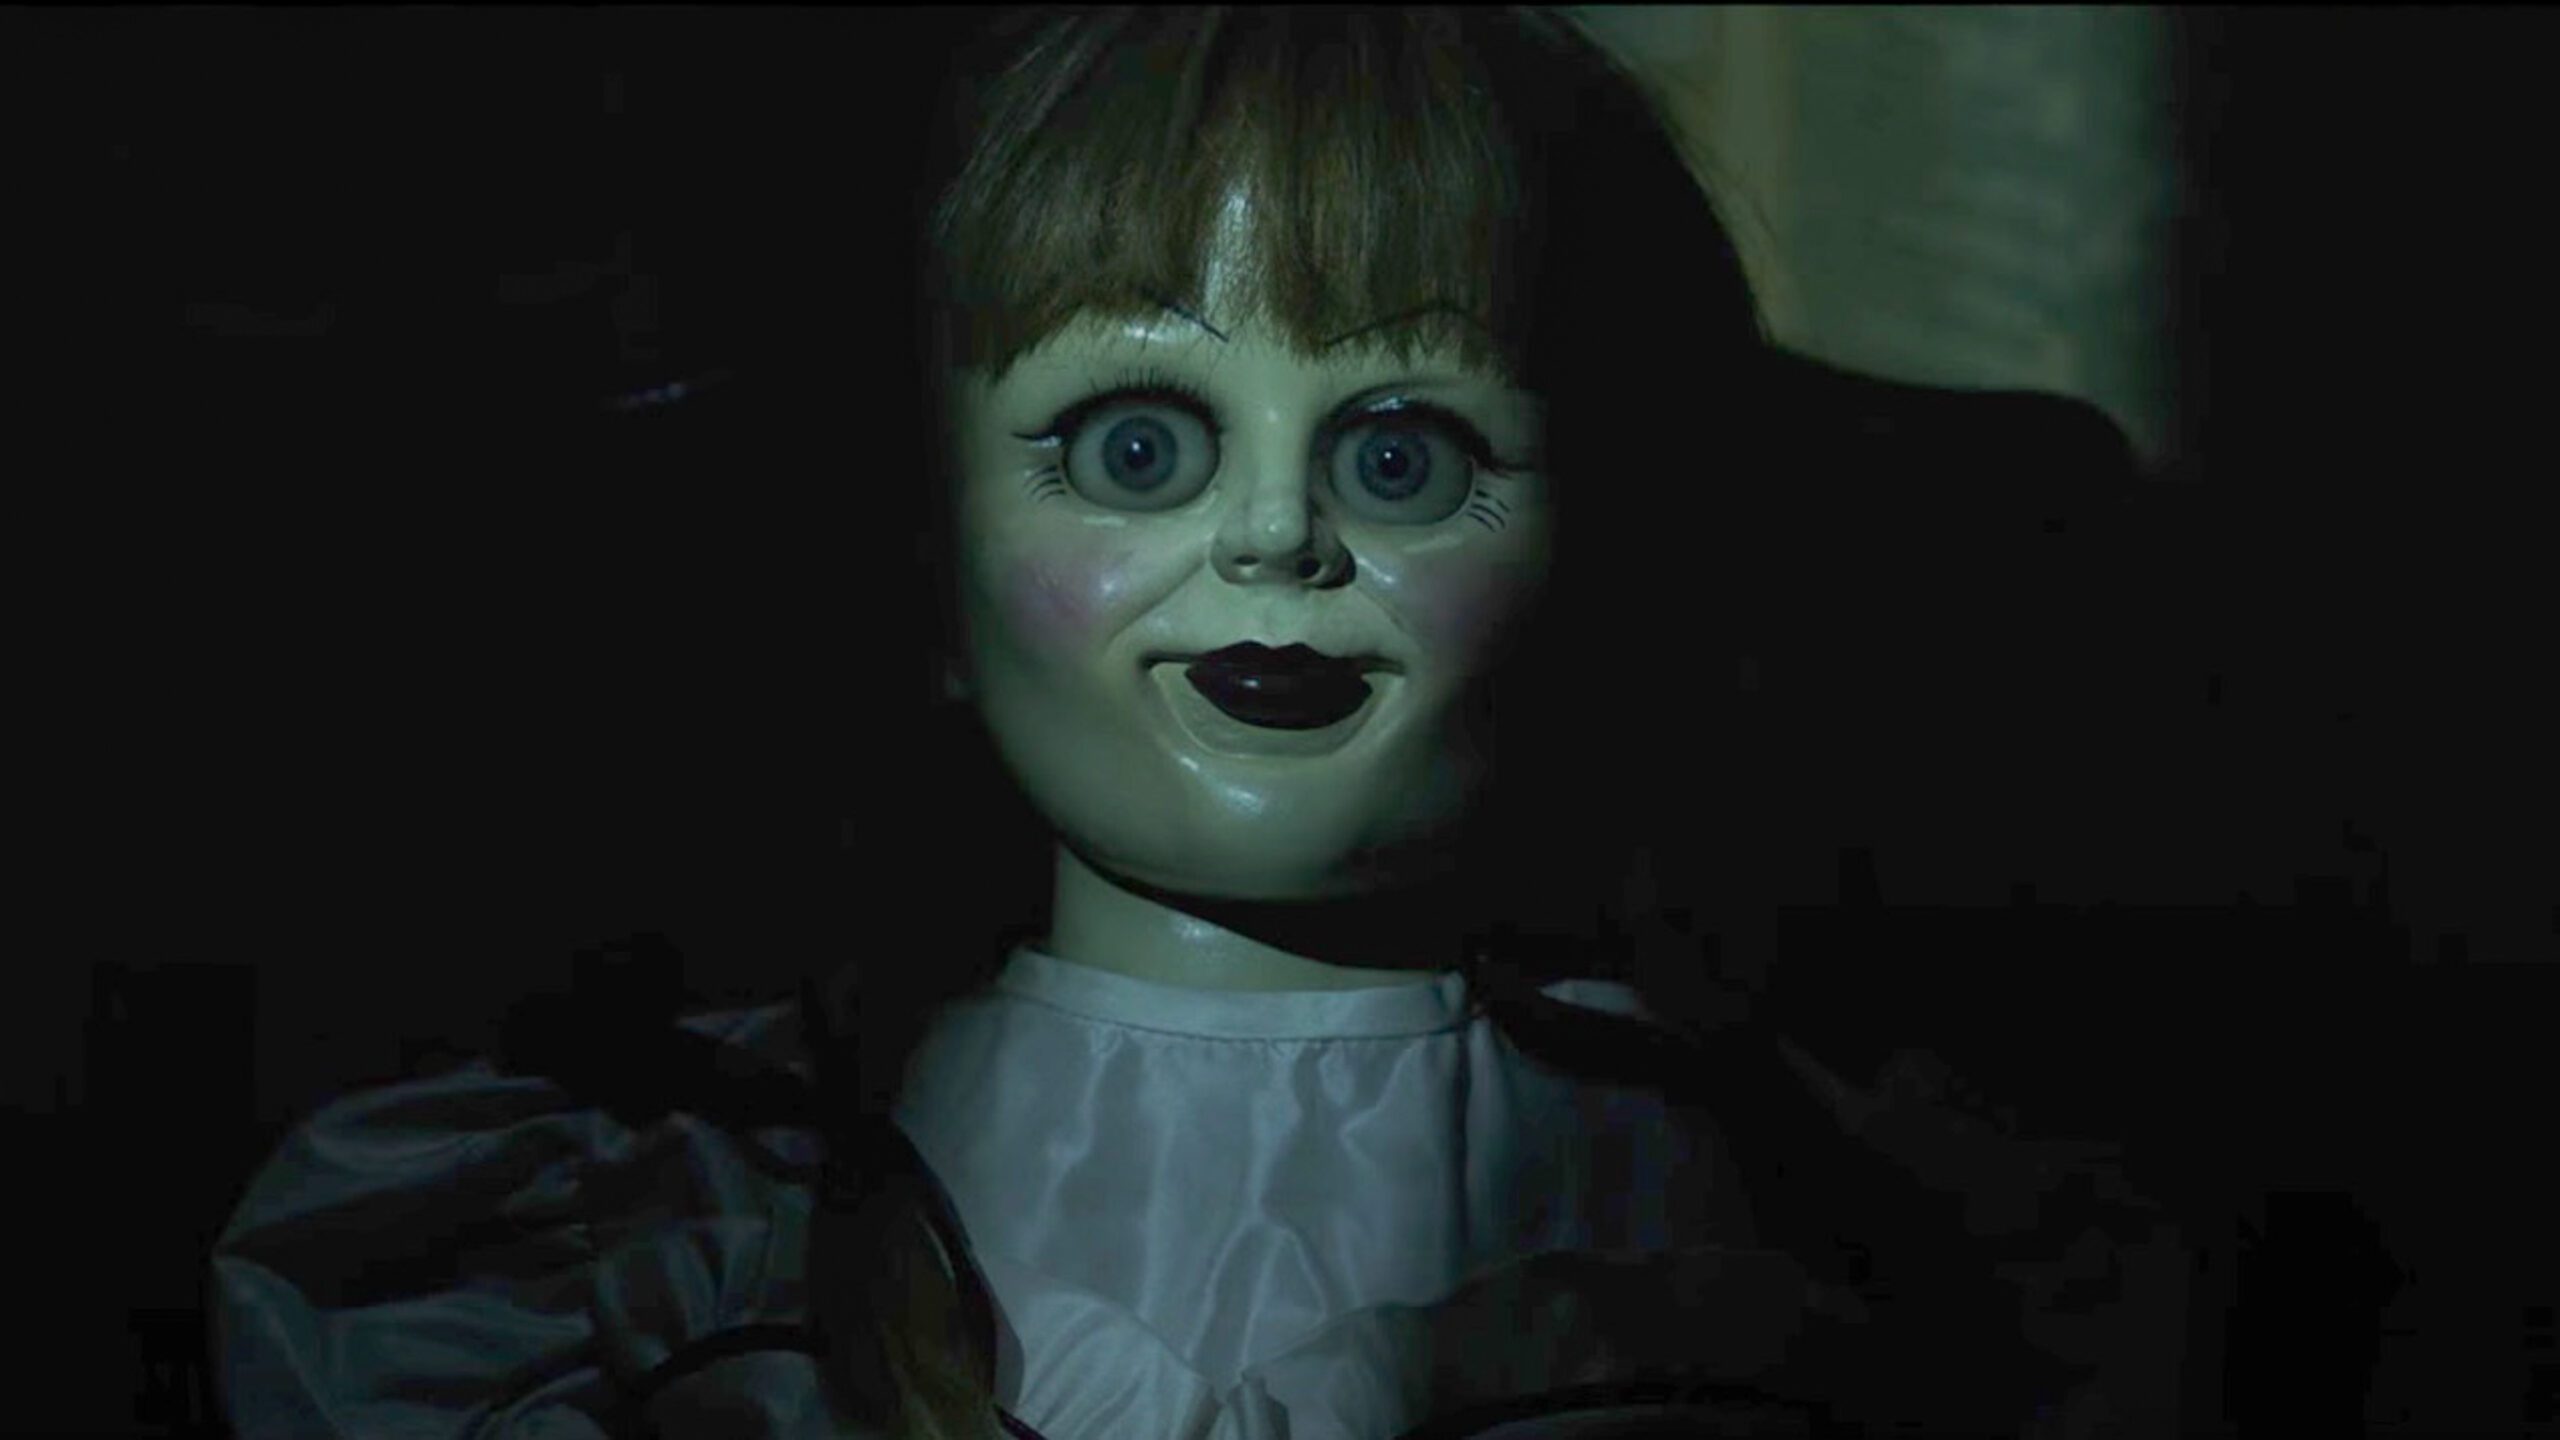 WATCH: Demon doll returns in new ‘Annabelle: Creation’ trailer